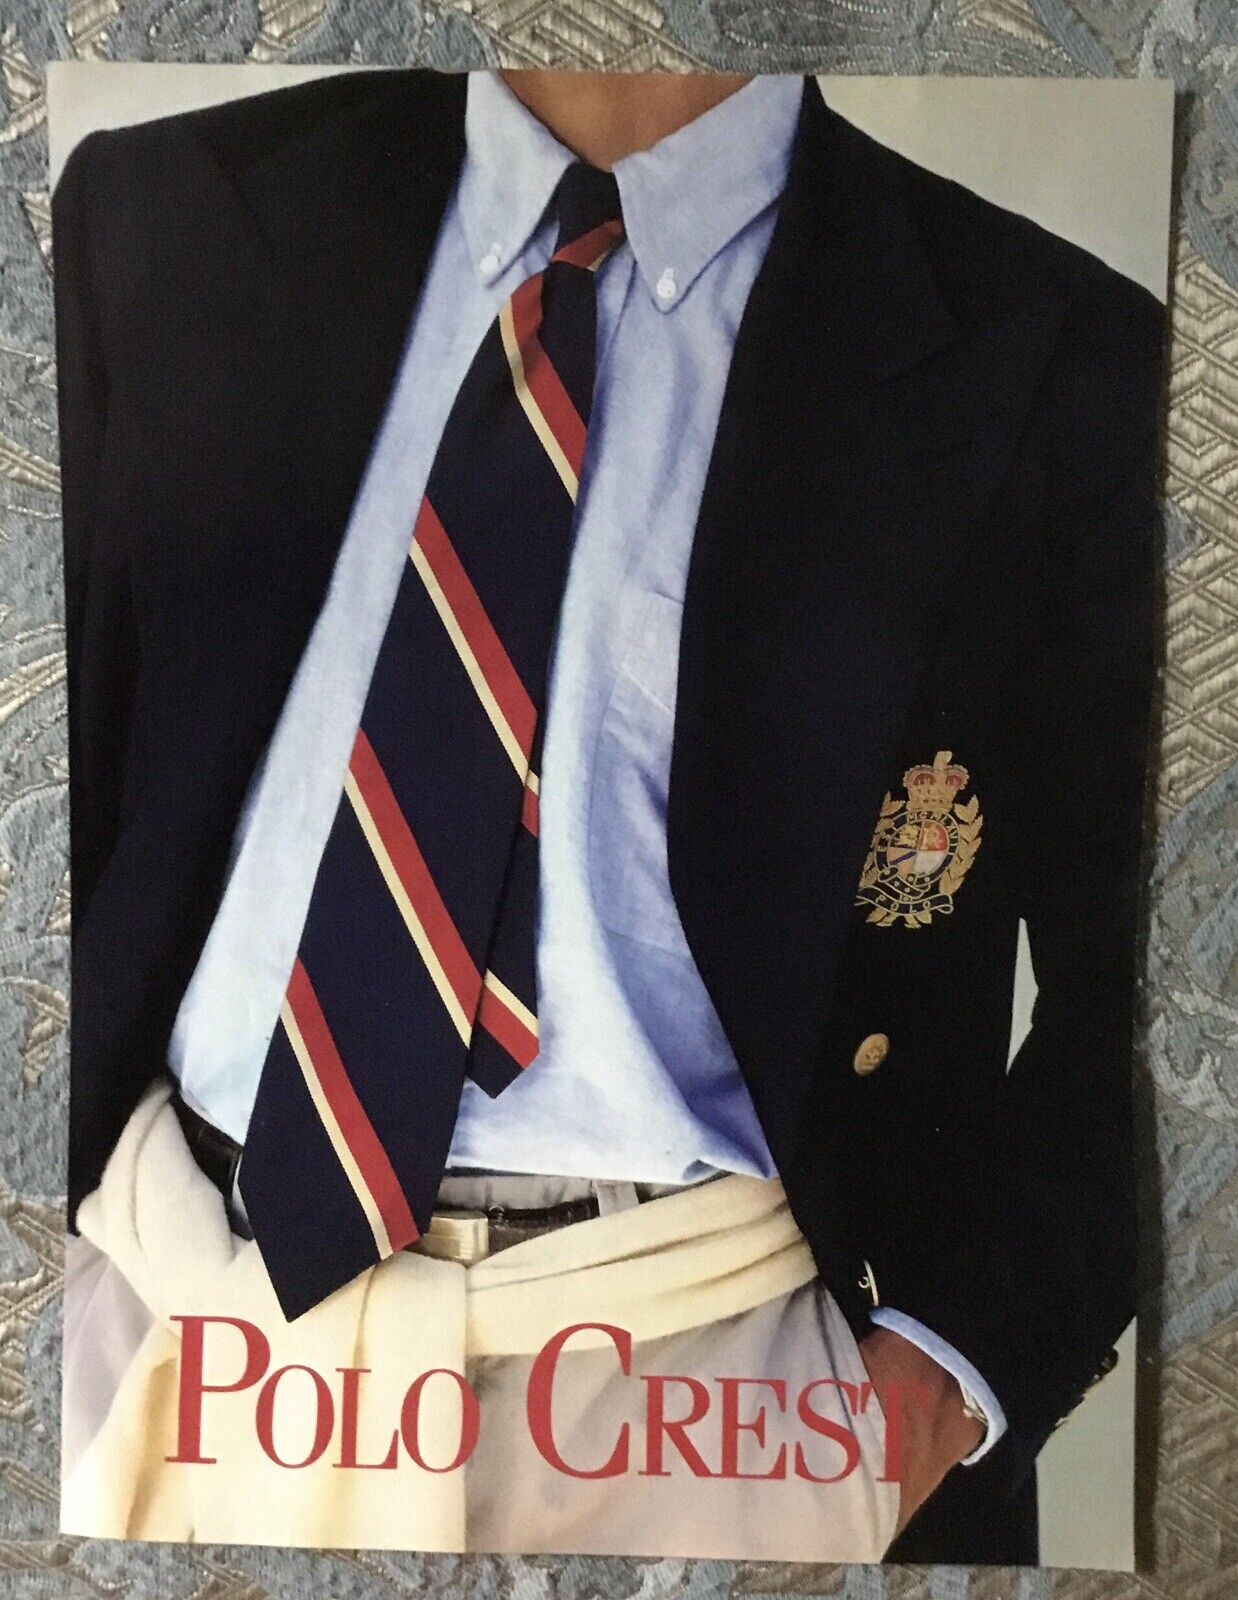 VTG 1990s Ralph Lauren Print Advertisement - Men's Polo Crest Blazer Stripe Tie